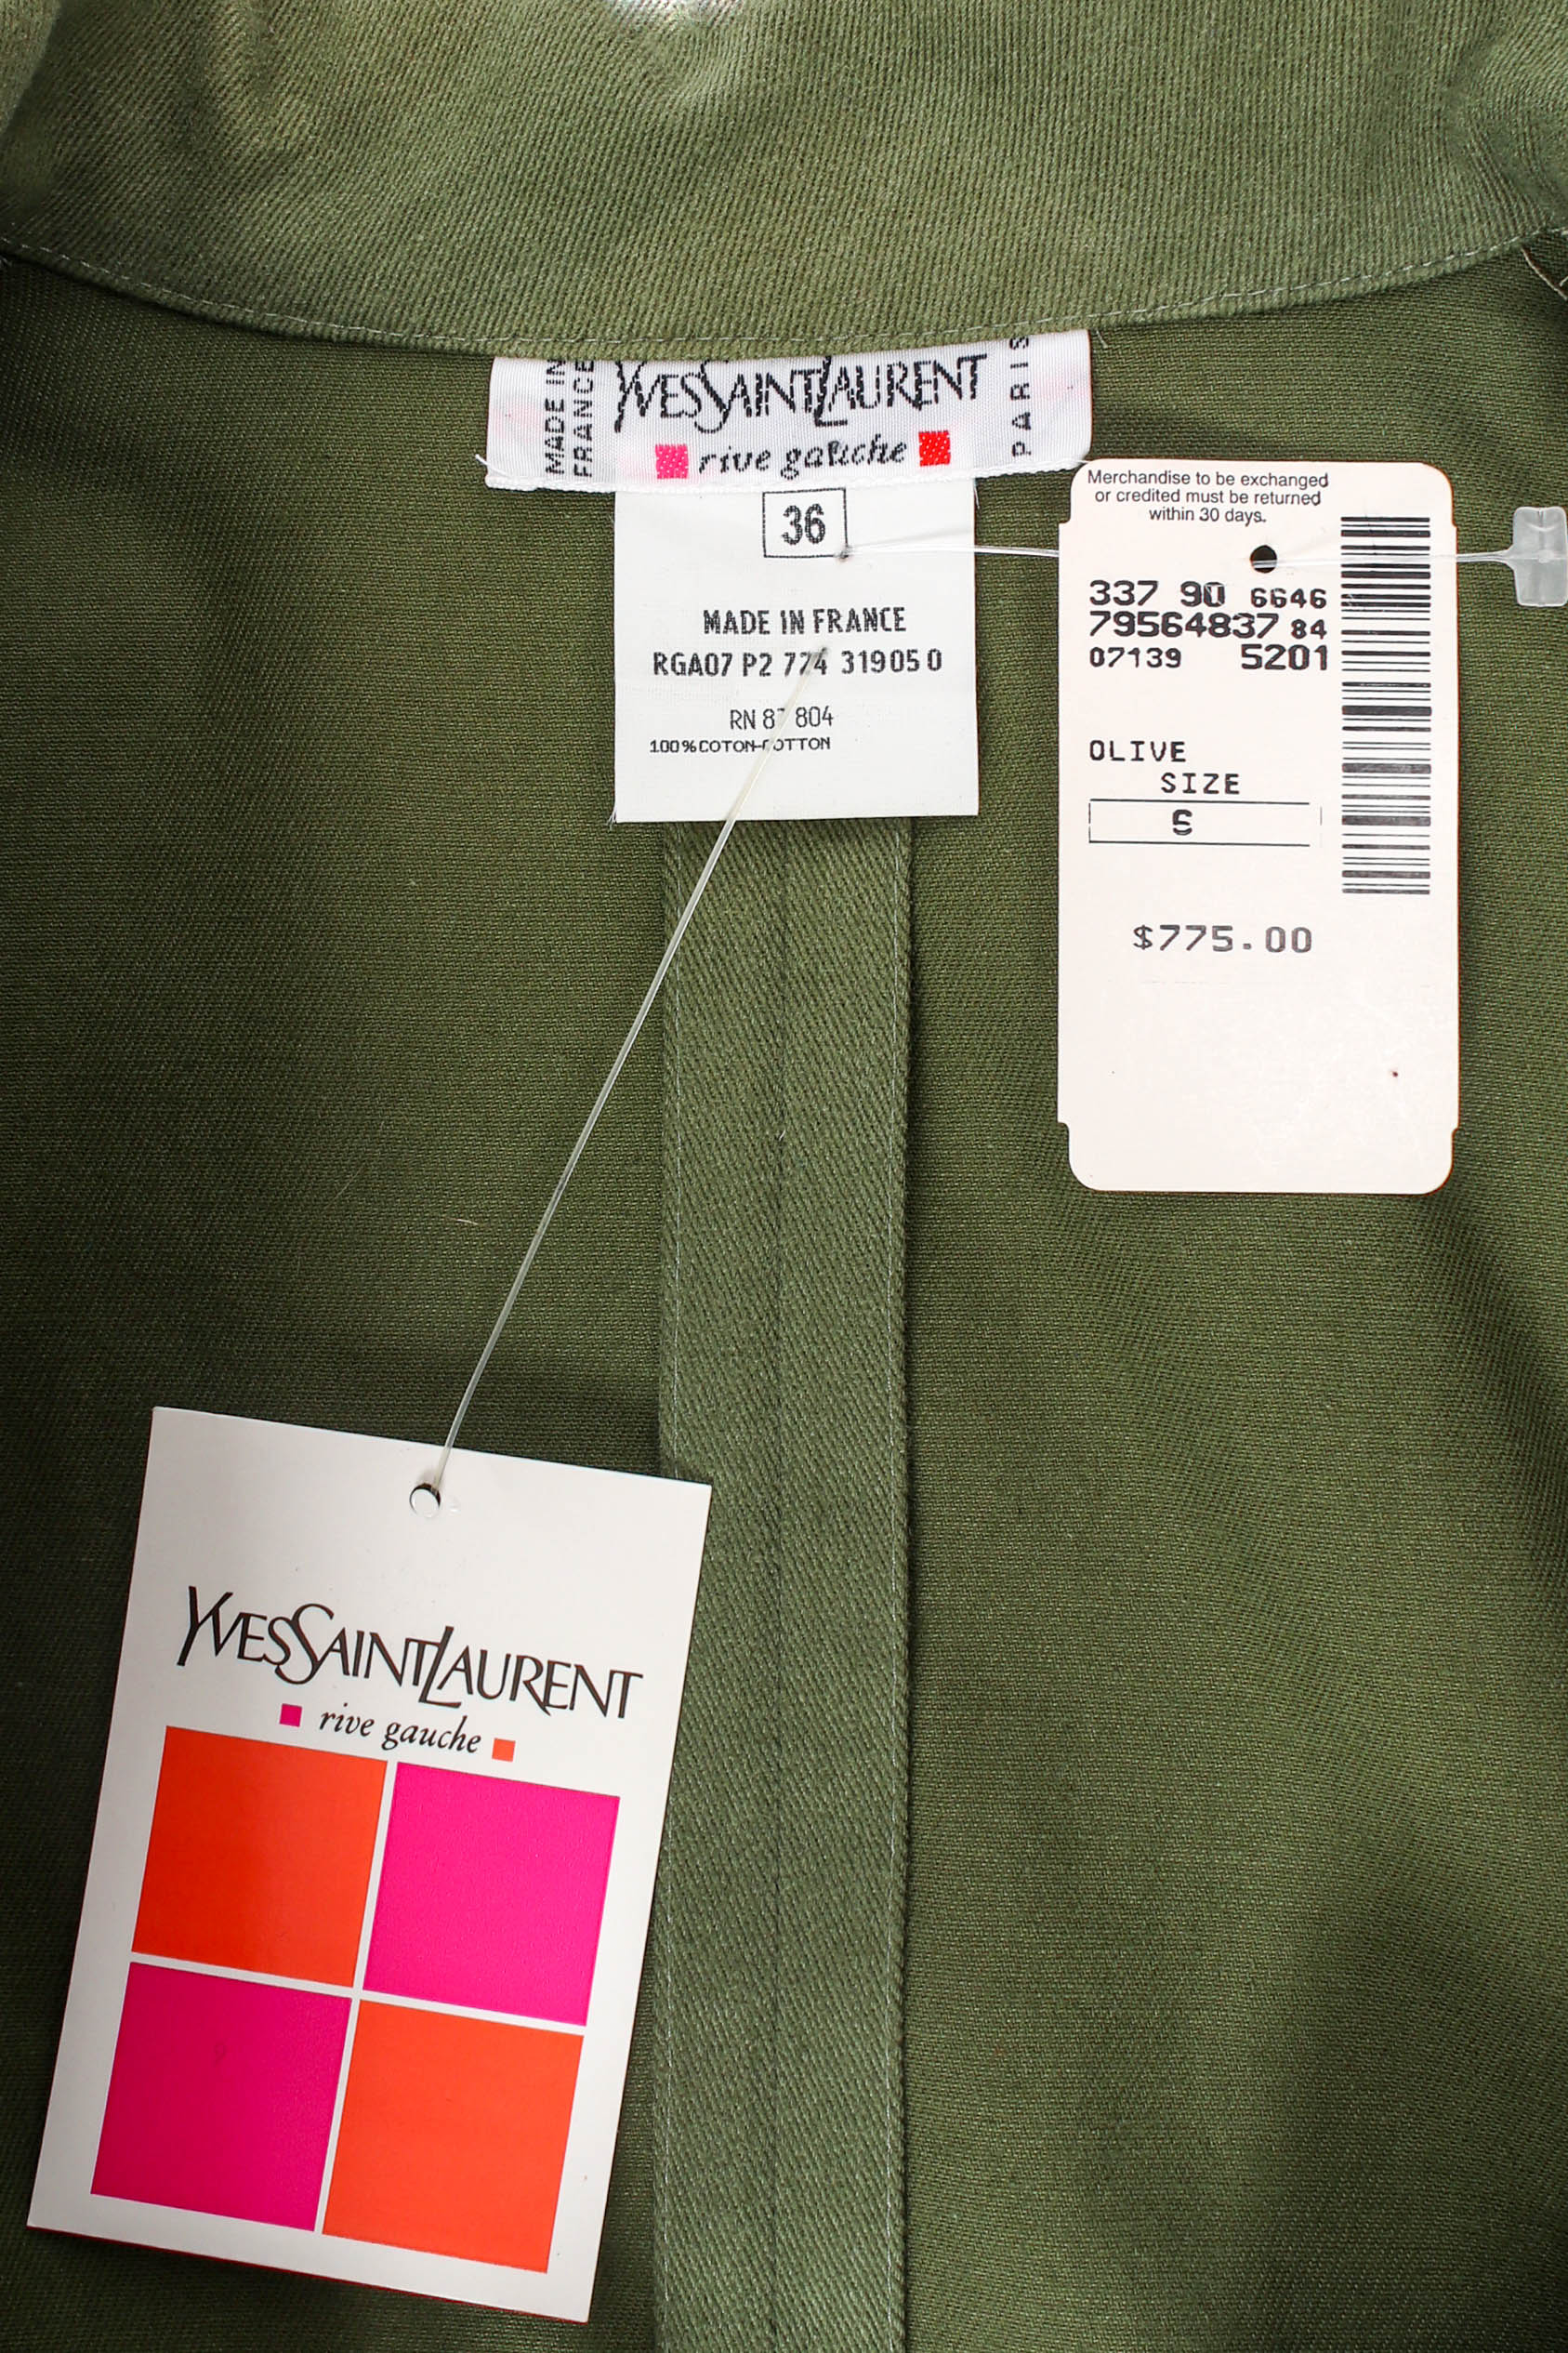 Vintage Yves Saint Laurent Safari Lace Up Dress tags detail @ Recess LA